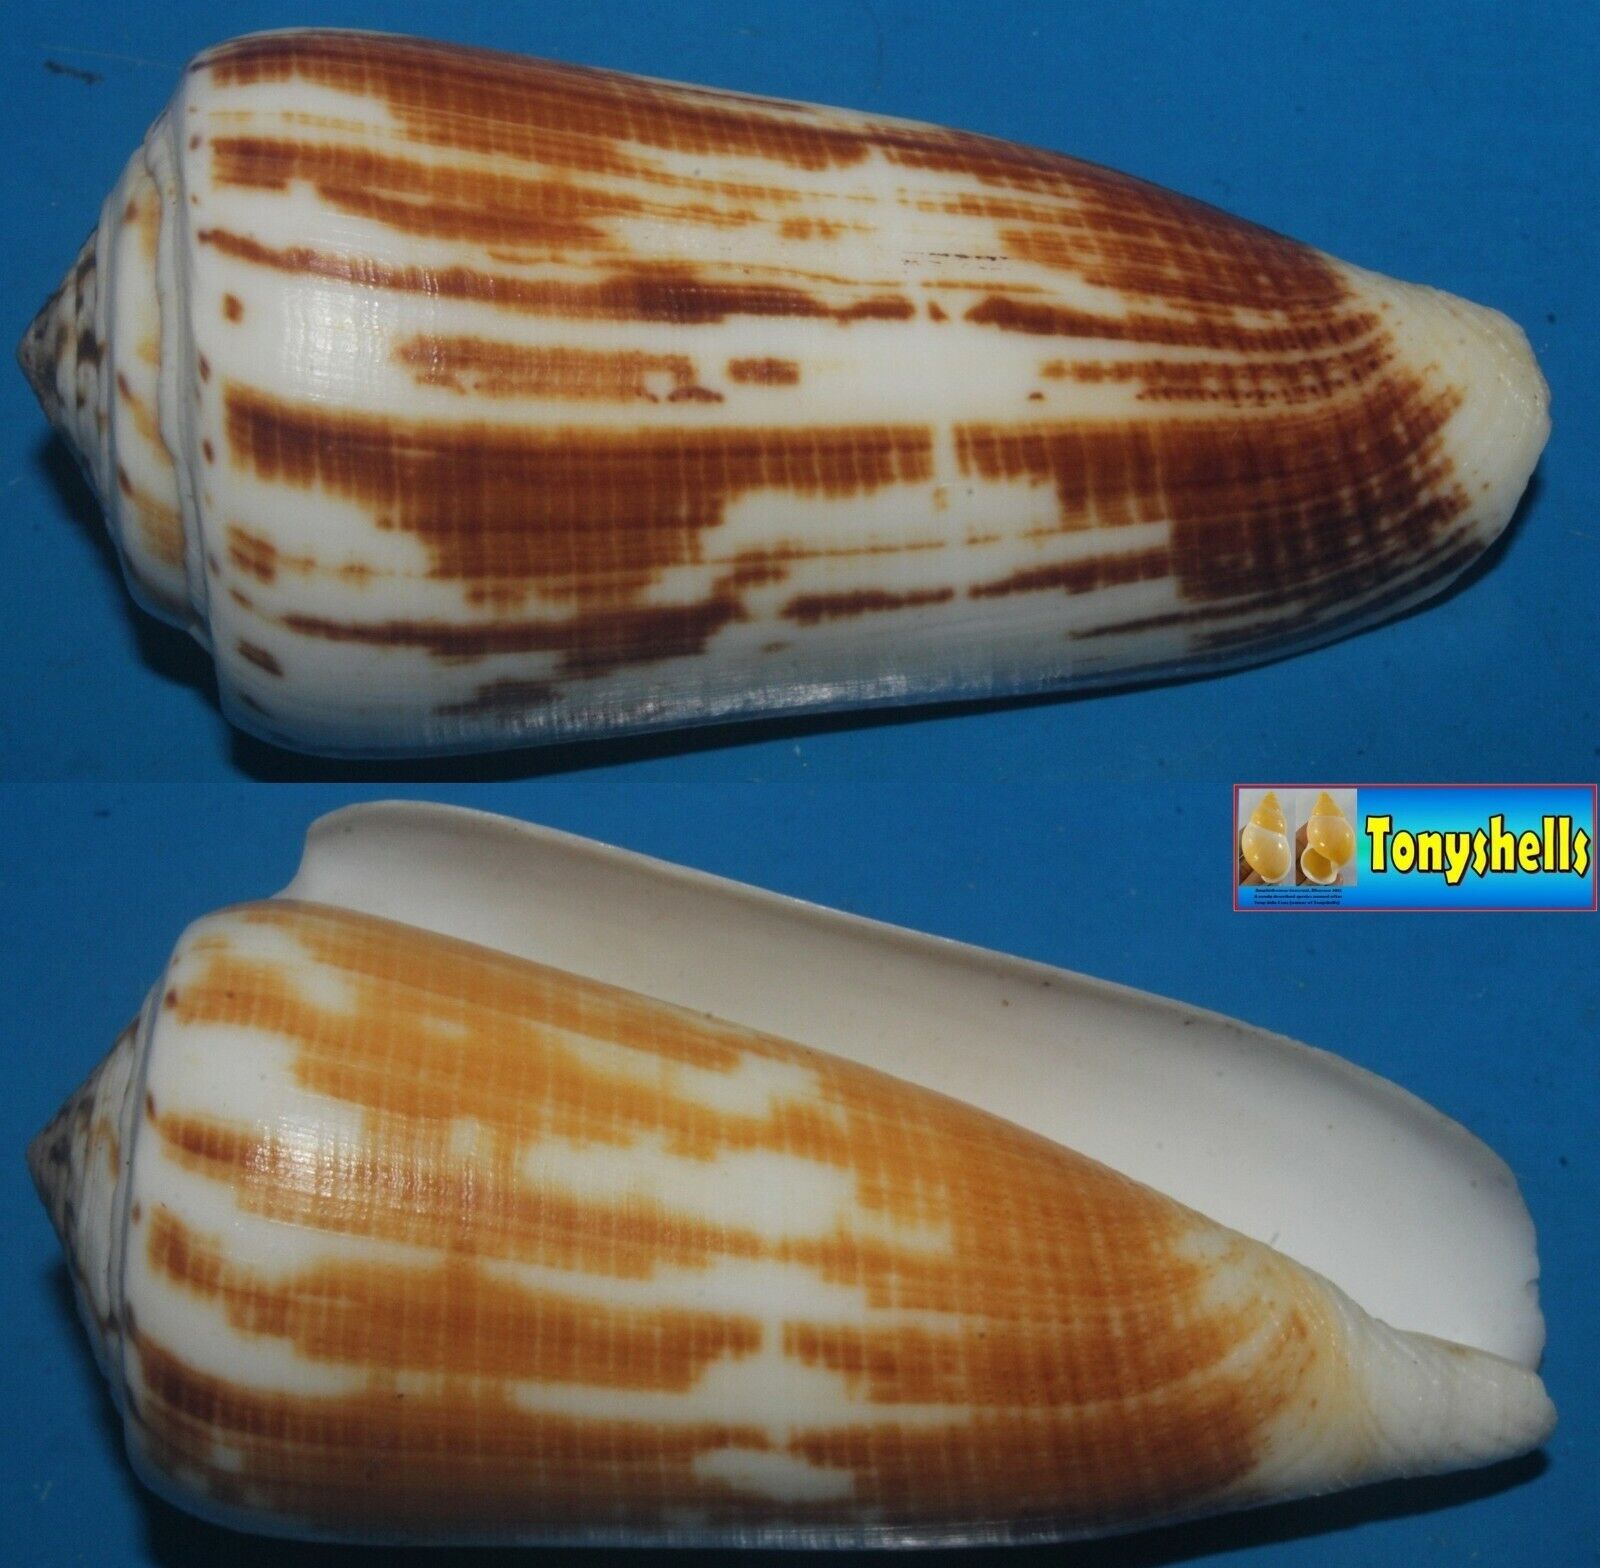 Tonyshells Seashells Conus magus fulvobullatus MAGICAL CONE 81mm F+++/GEM Superb